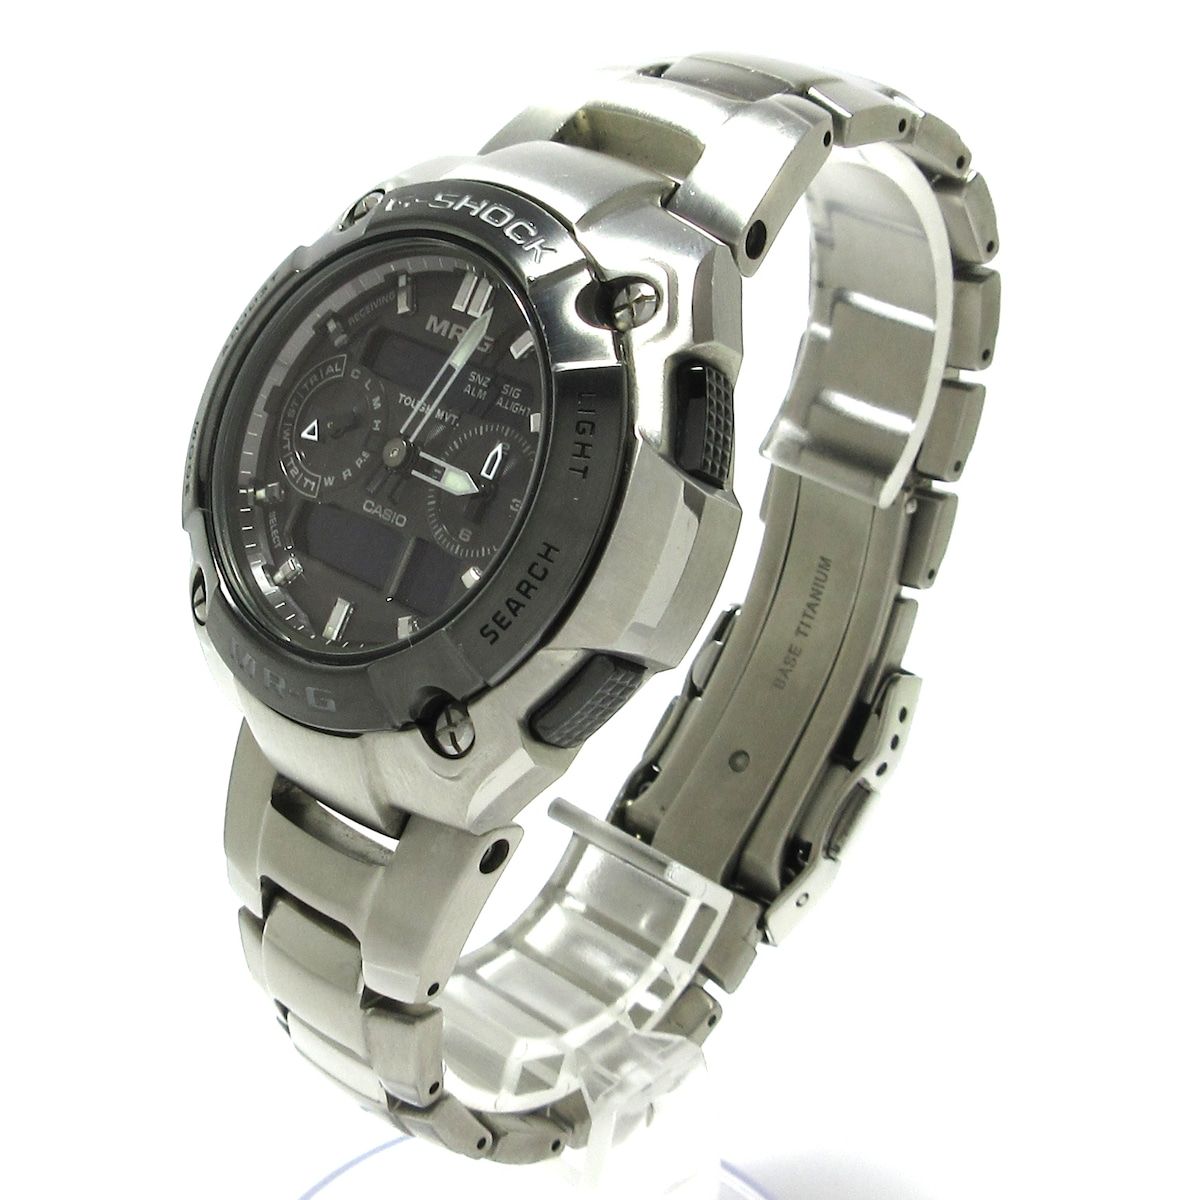 G-SHOCK MR-G 腕時計 チタン グレーMRG-7600D-1BJFよろしくお願い 